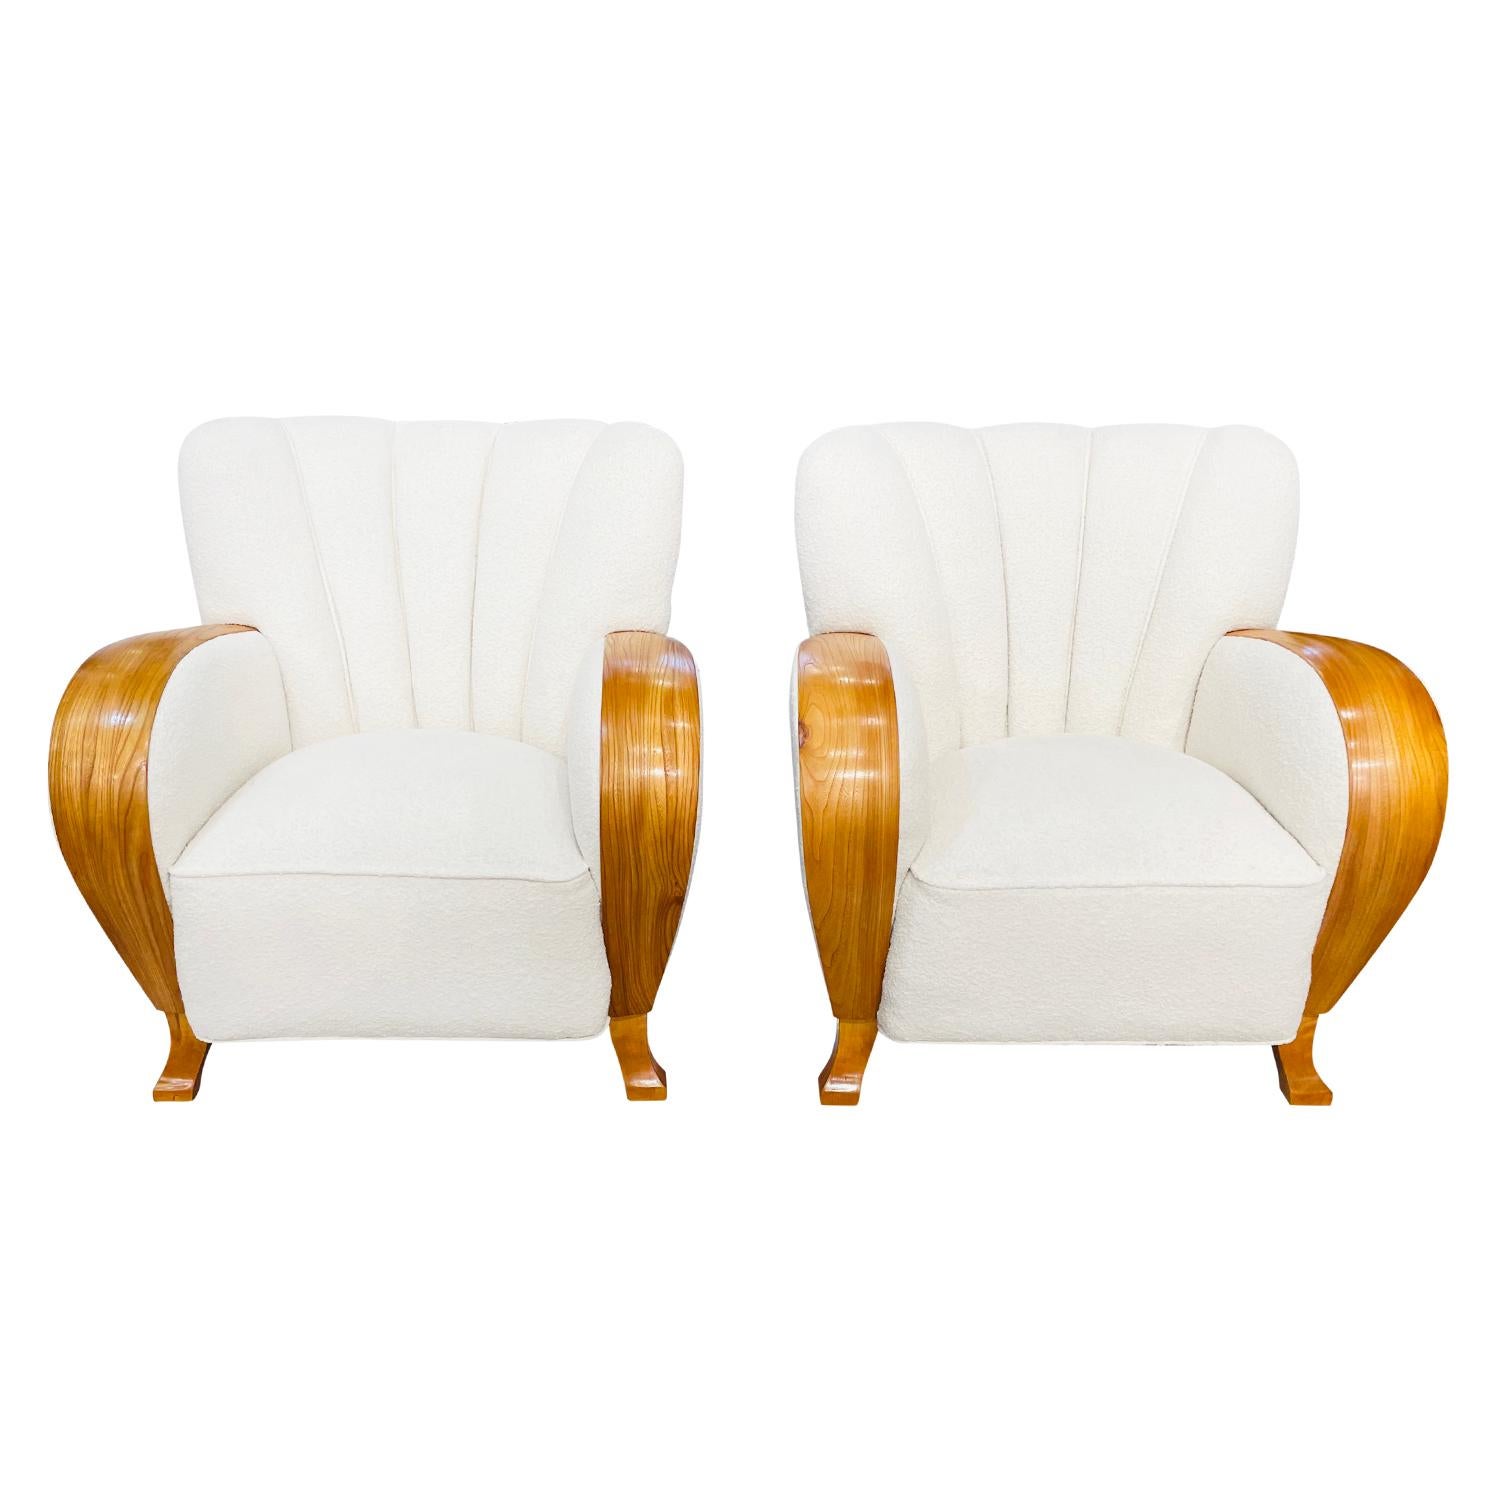 Une paire vintage de grandes chaises de salon Art Deco danoises en bois de bouleau poli travaillé à la main, conçues et produites par un designer inconnu de Copenhague, en bon état. Les fauteuils scandinaves ont un dossier haut et incurvé et deux